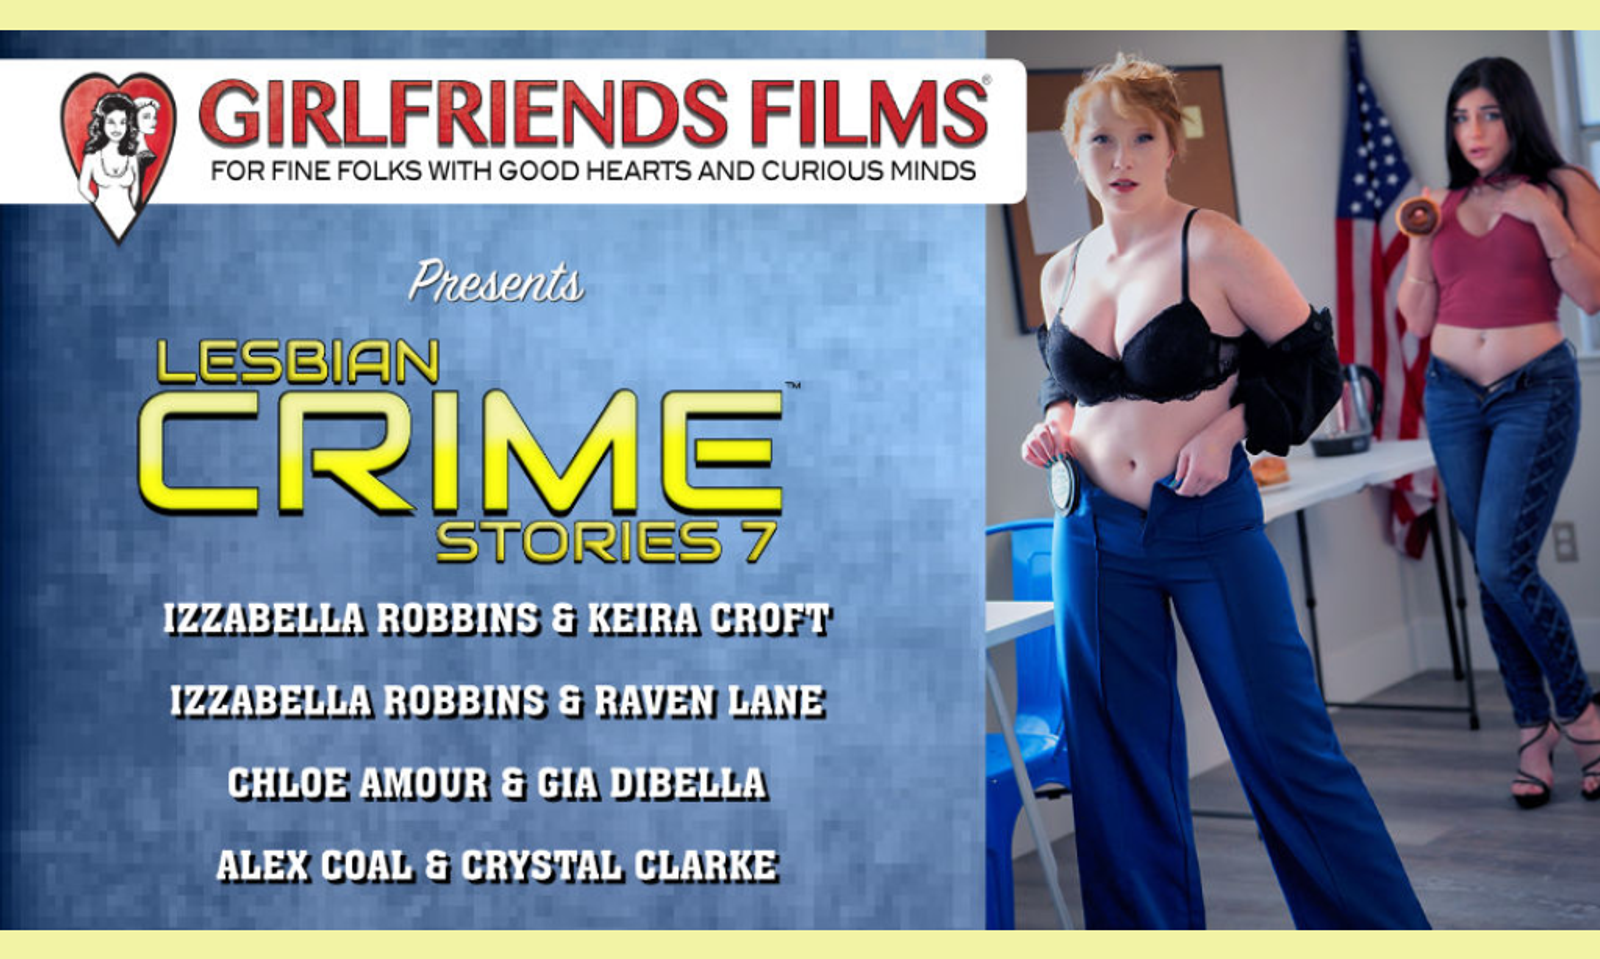 Girlfriends Films Announces 'Lesbian Crime Stories 7'